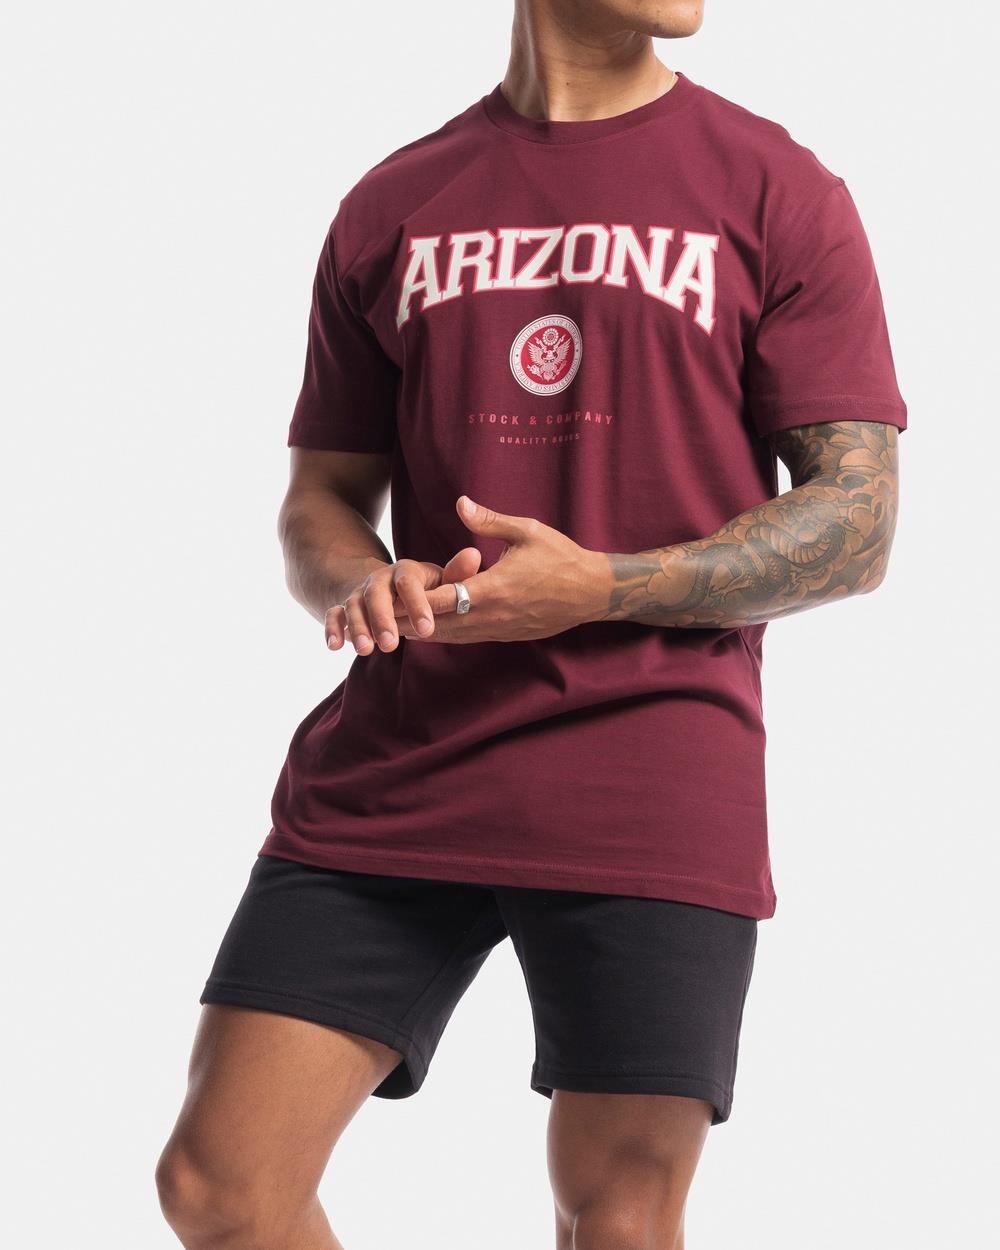 Stock & Co. - Arizona Tee - Short Sleeve T-Shirts (Oxblood) Arizona Tee